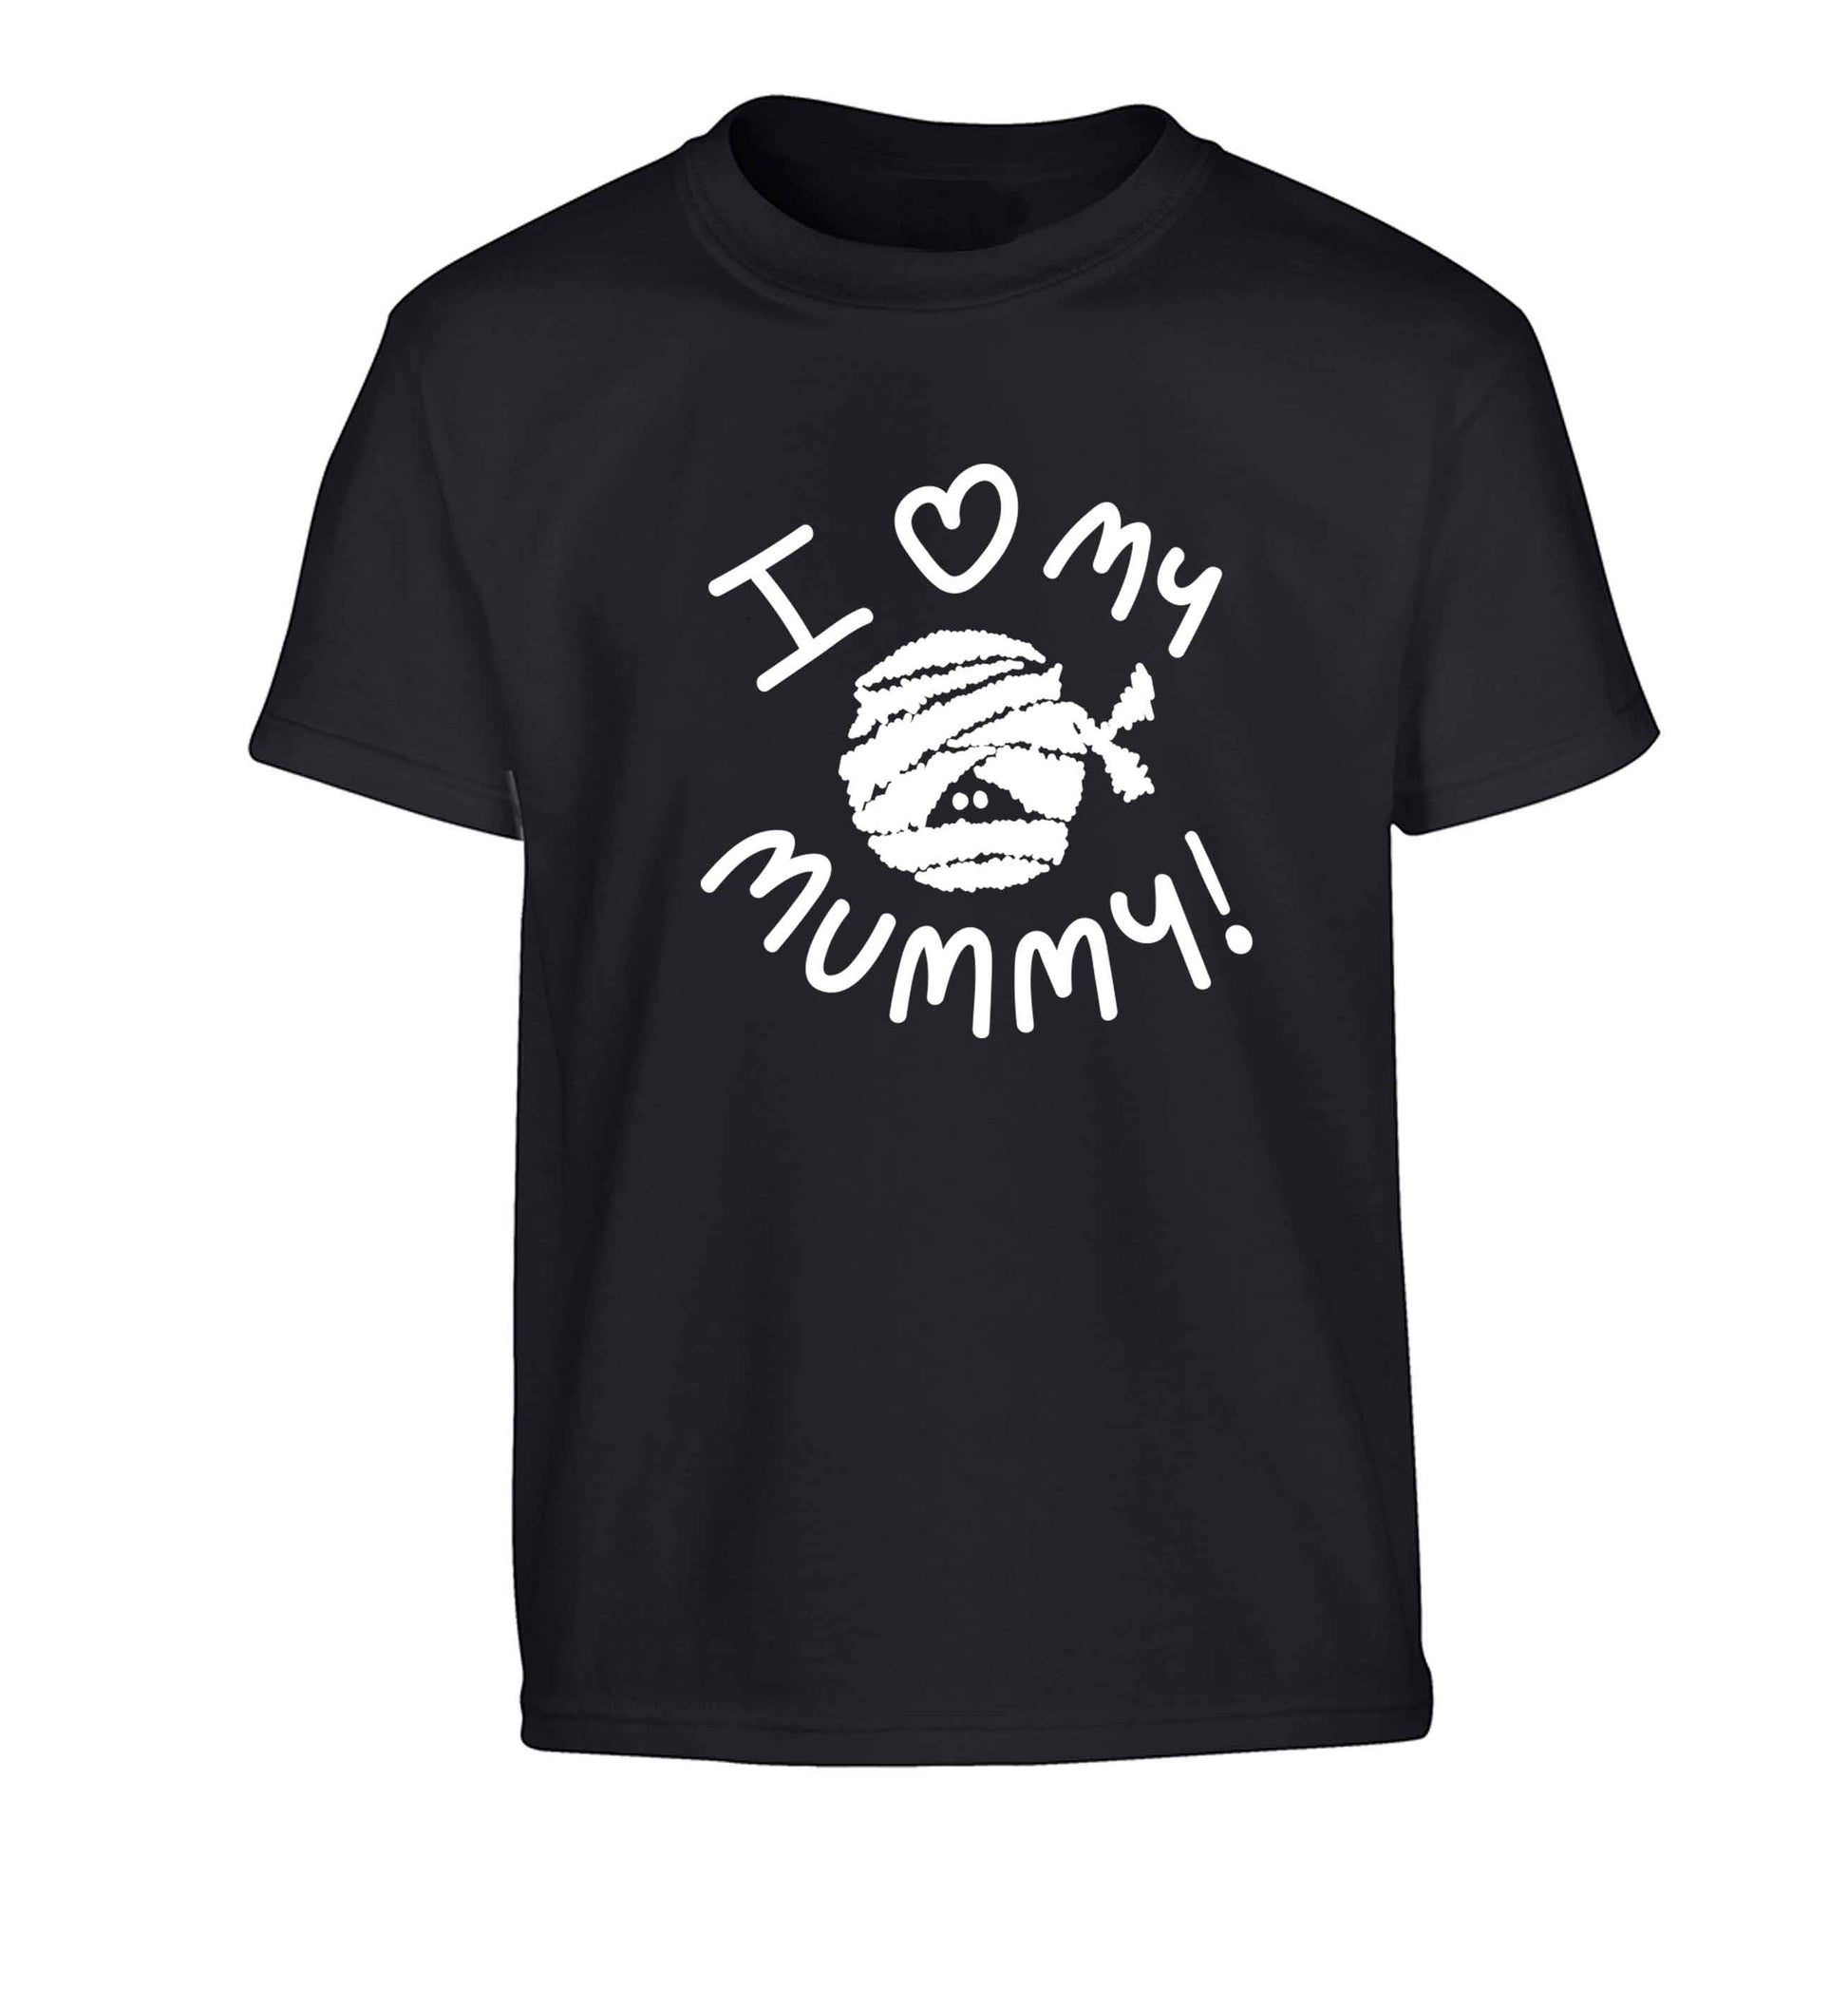 I love my mummy halloween pun Children's black Tshirt 12-13 Years